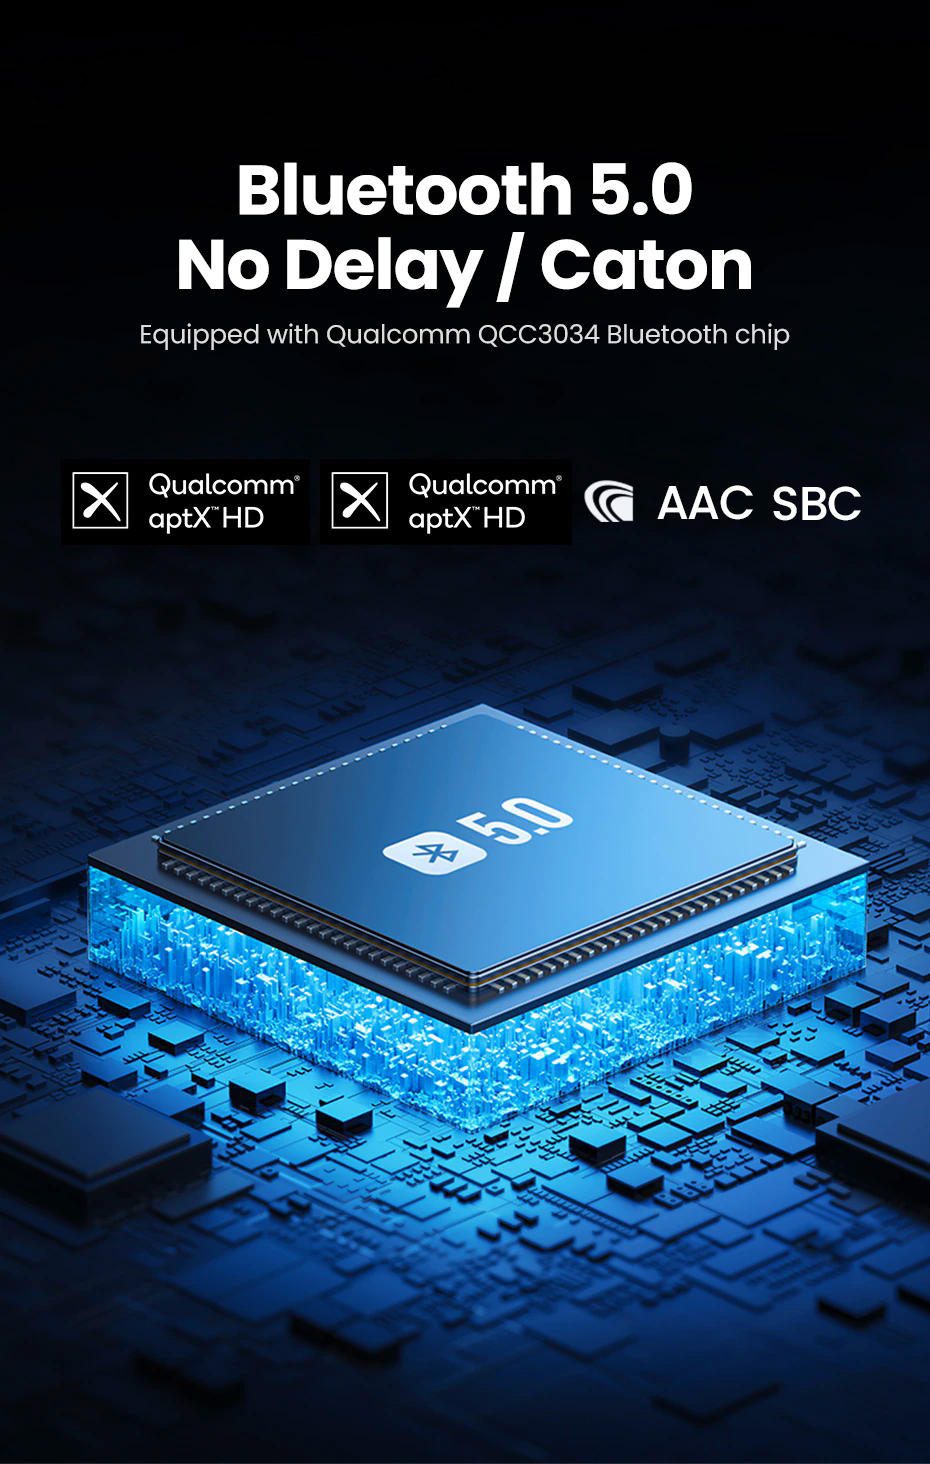 Bộ thu Bluetooth 5.0 UGREEN CM402 - Hỗ trợ âm thanh Hifi, Pin 400mAh cho 10h giờ sử dụng - Tính năng kết nối NFC